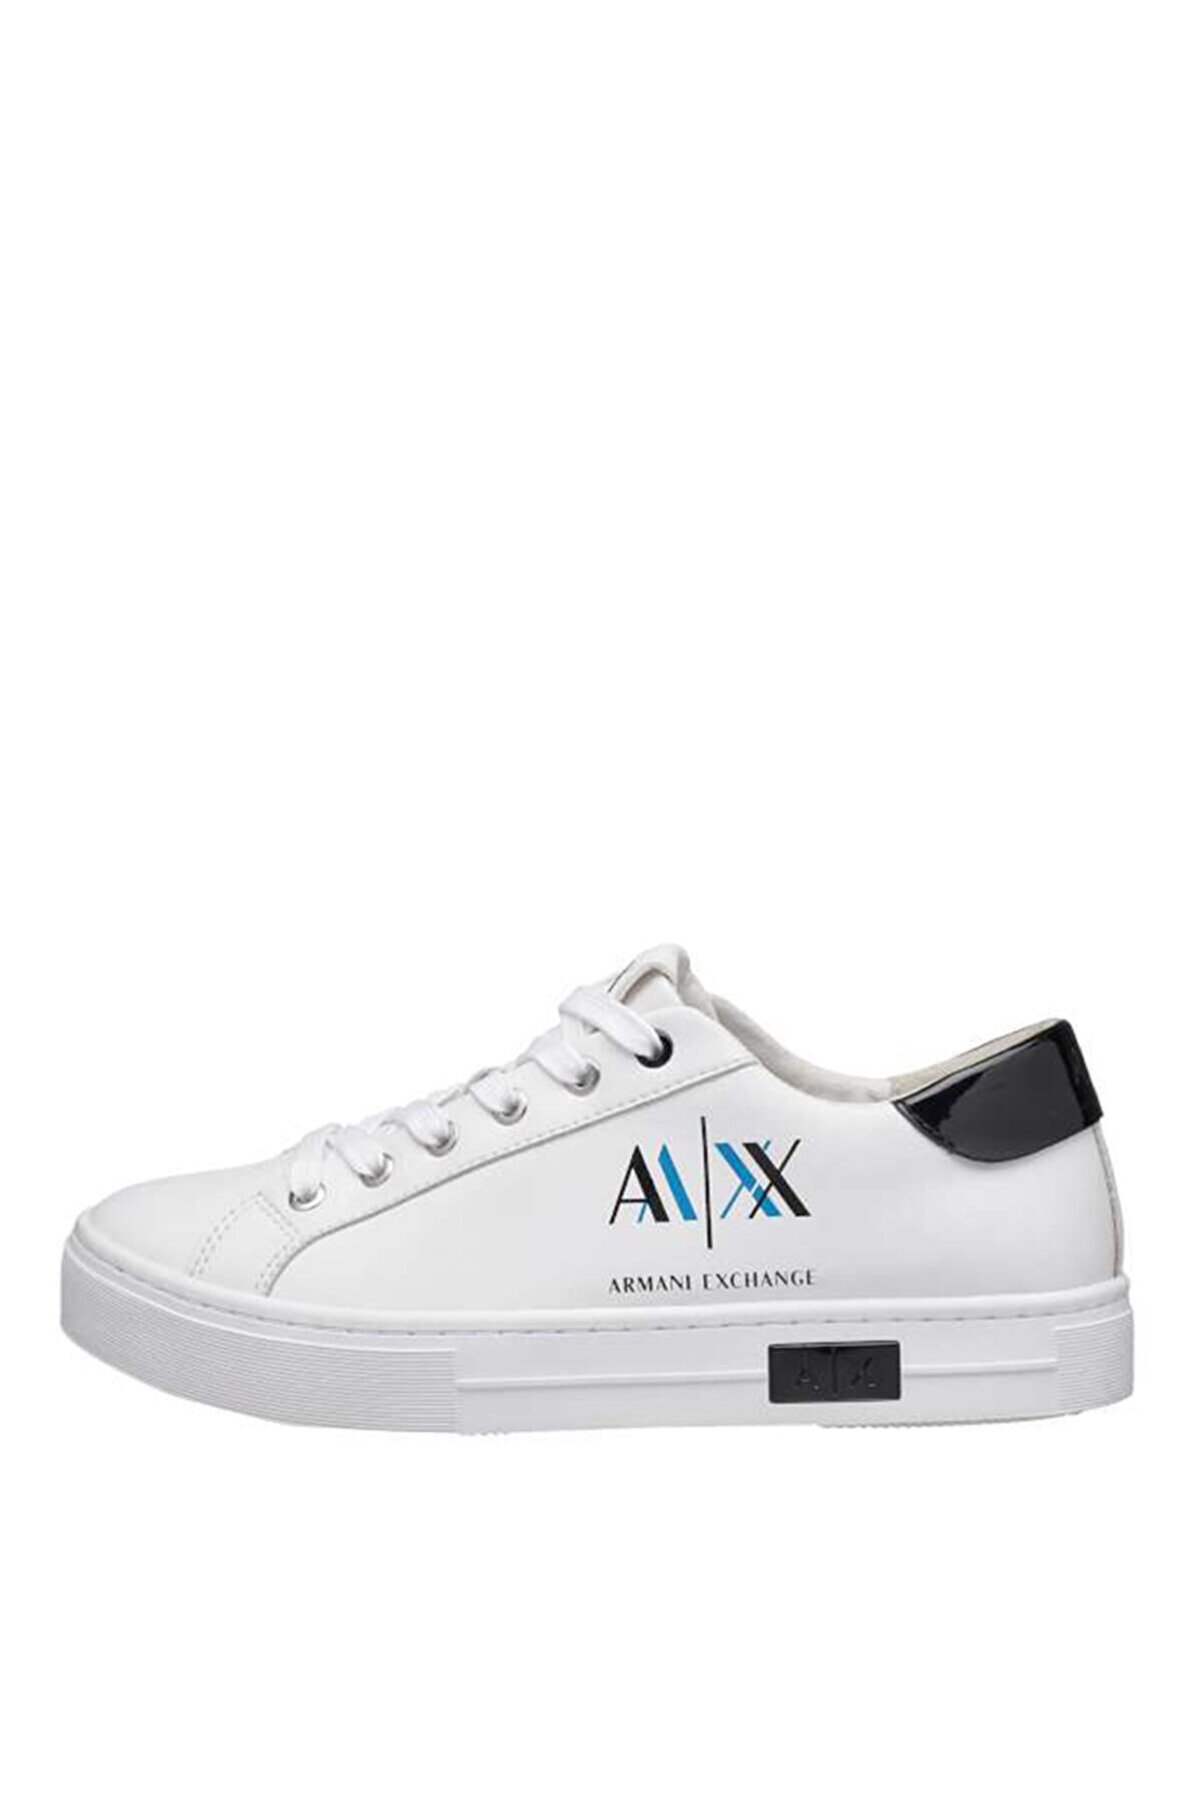 Armani Exchange Kadın Beyaz Spor Sneaker Ayakkabı